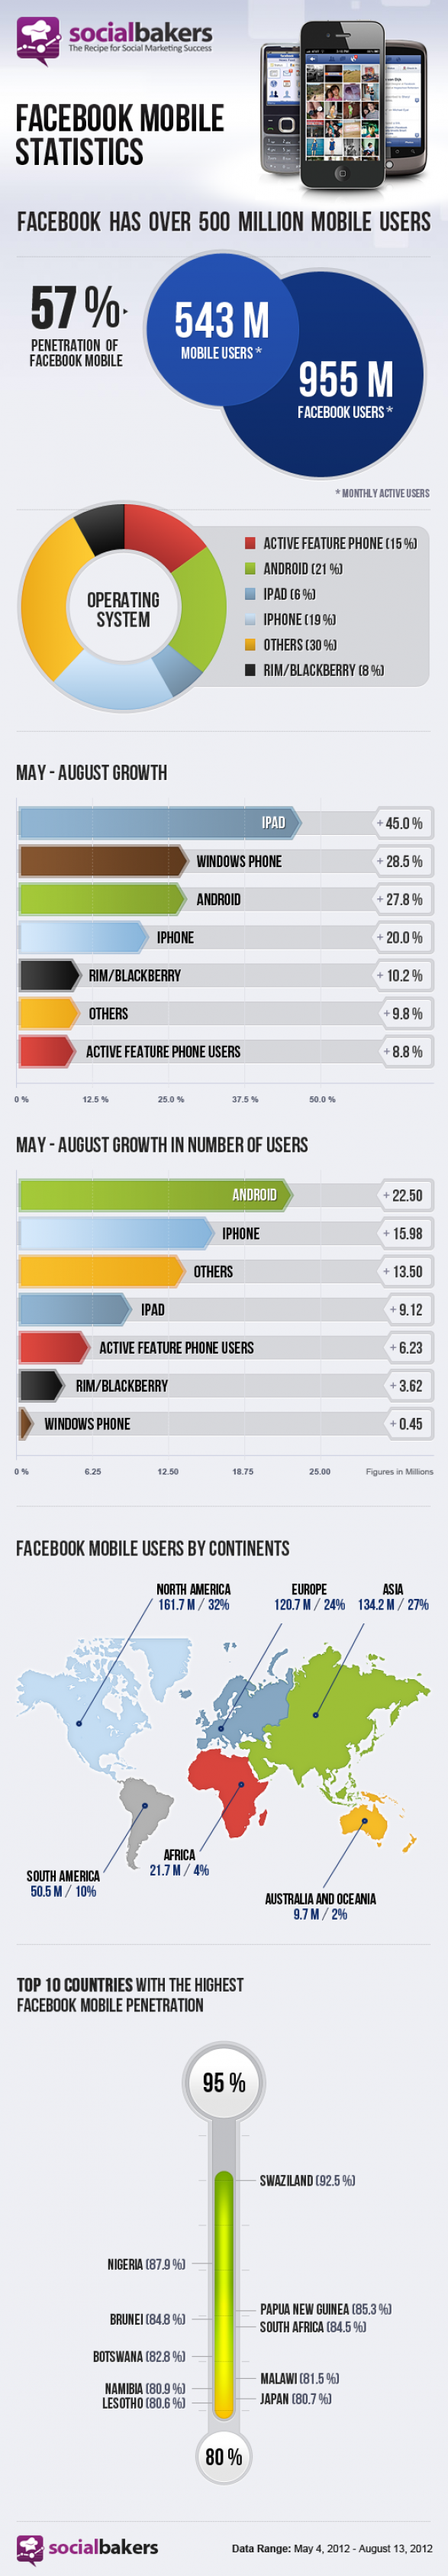 Facebook-mobile-statistics